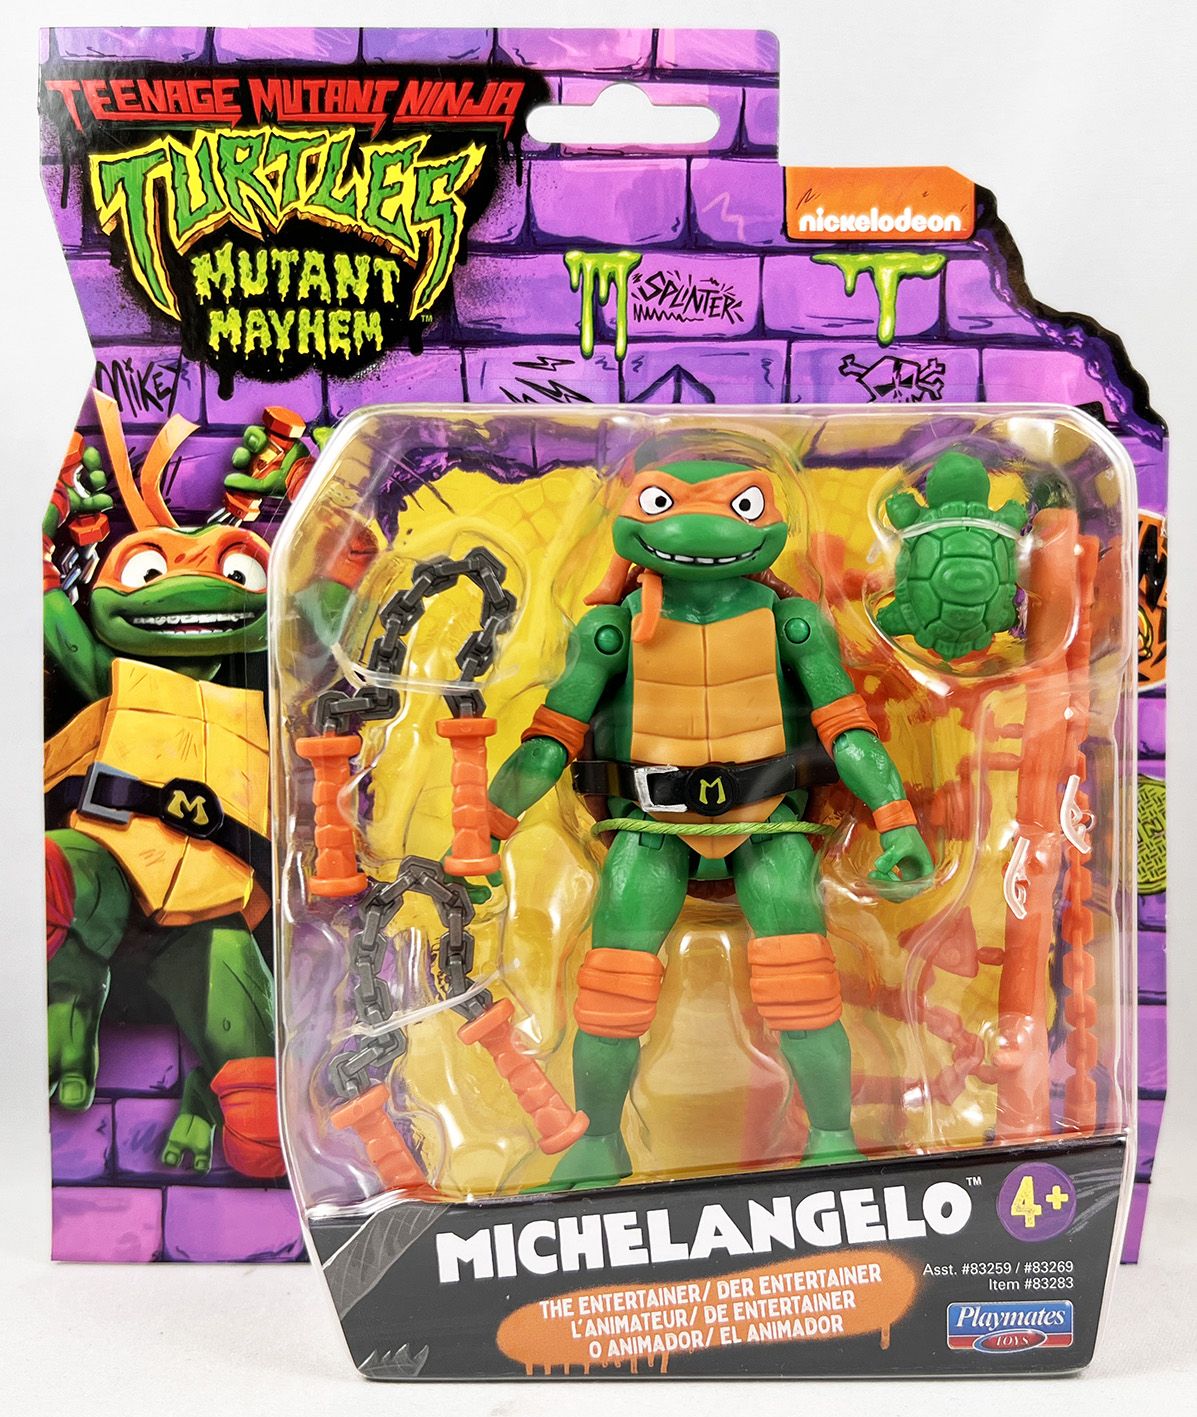 Teenage Mutant Ninja Turtles Mutant Mayhem Movie Playmates Michelangelo